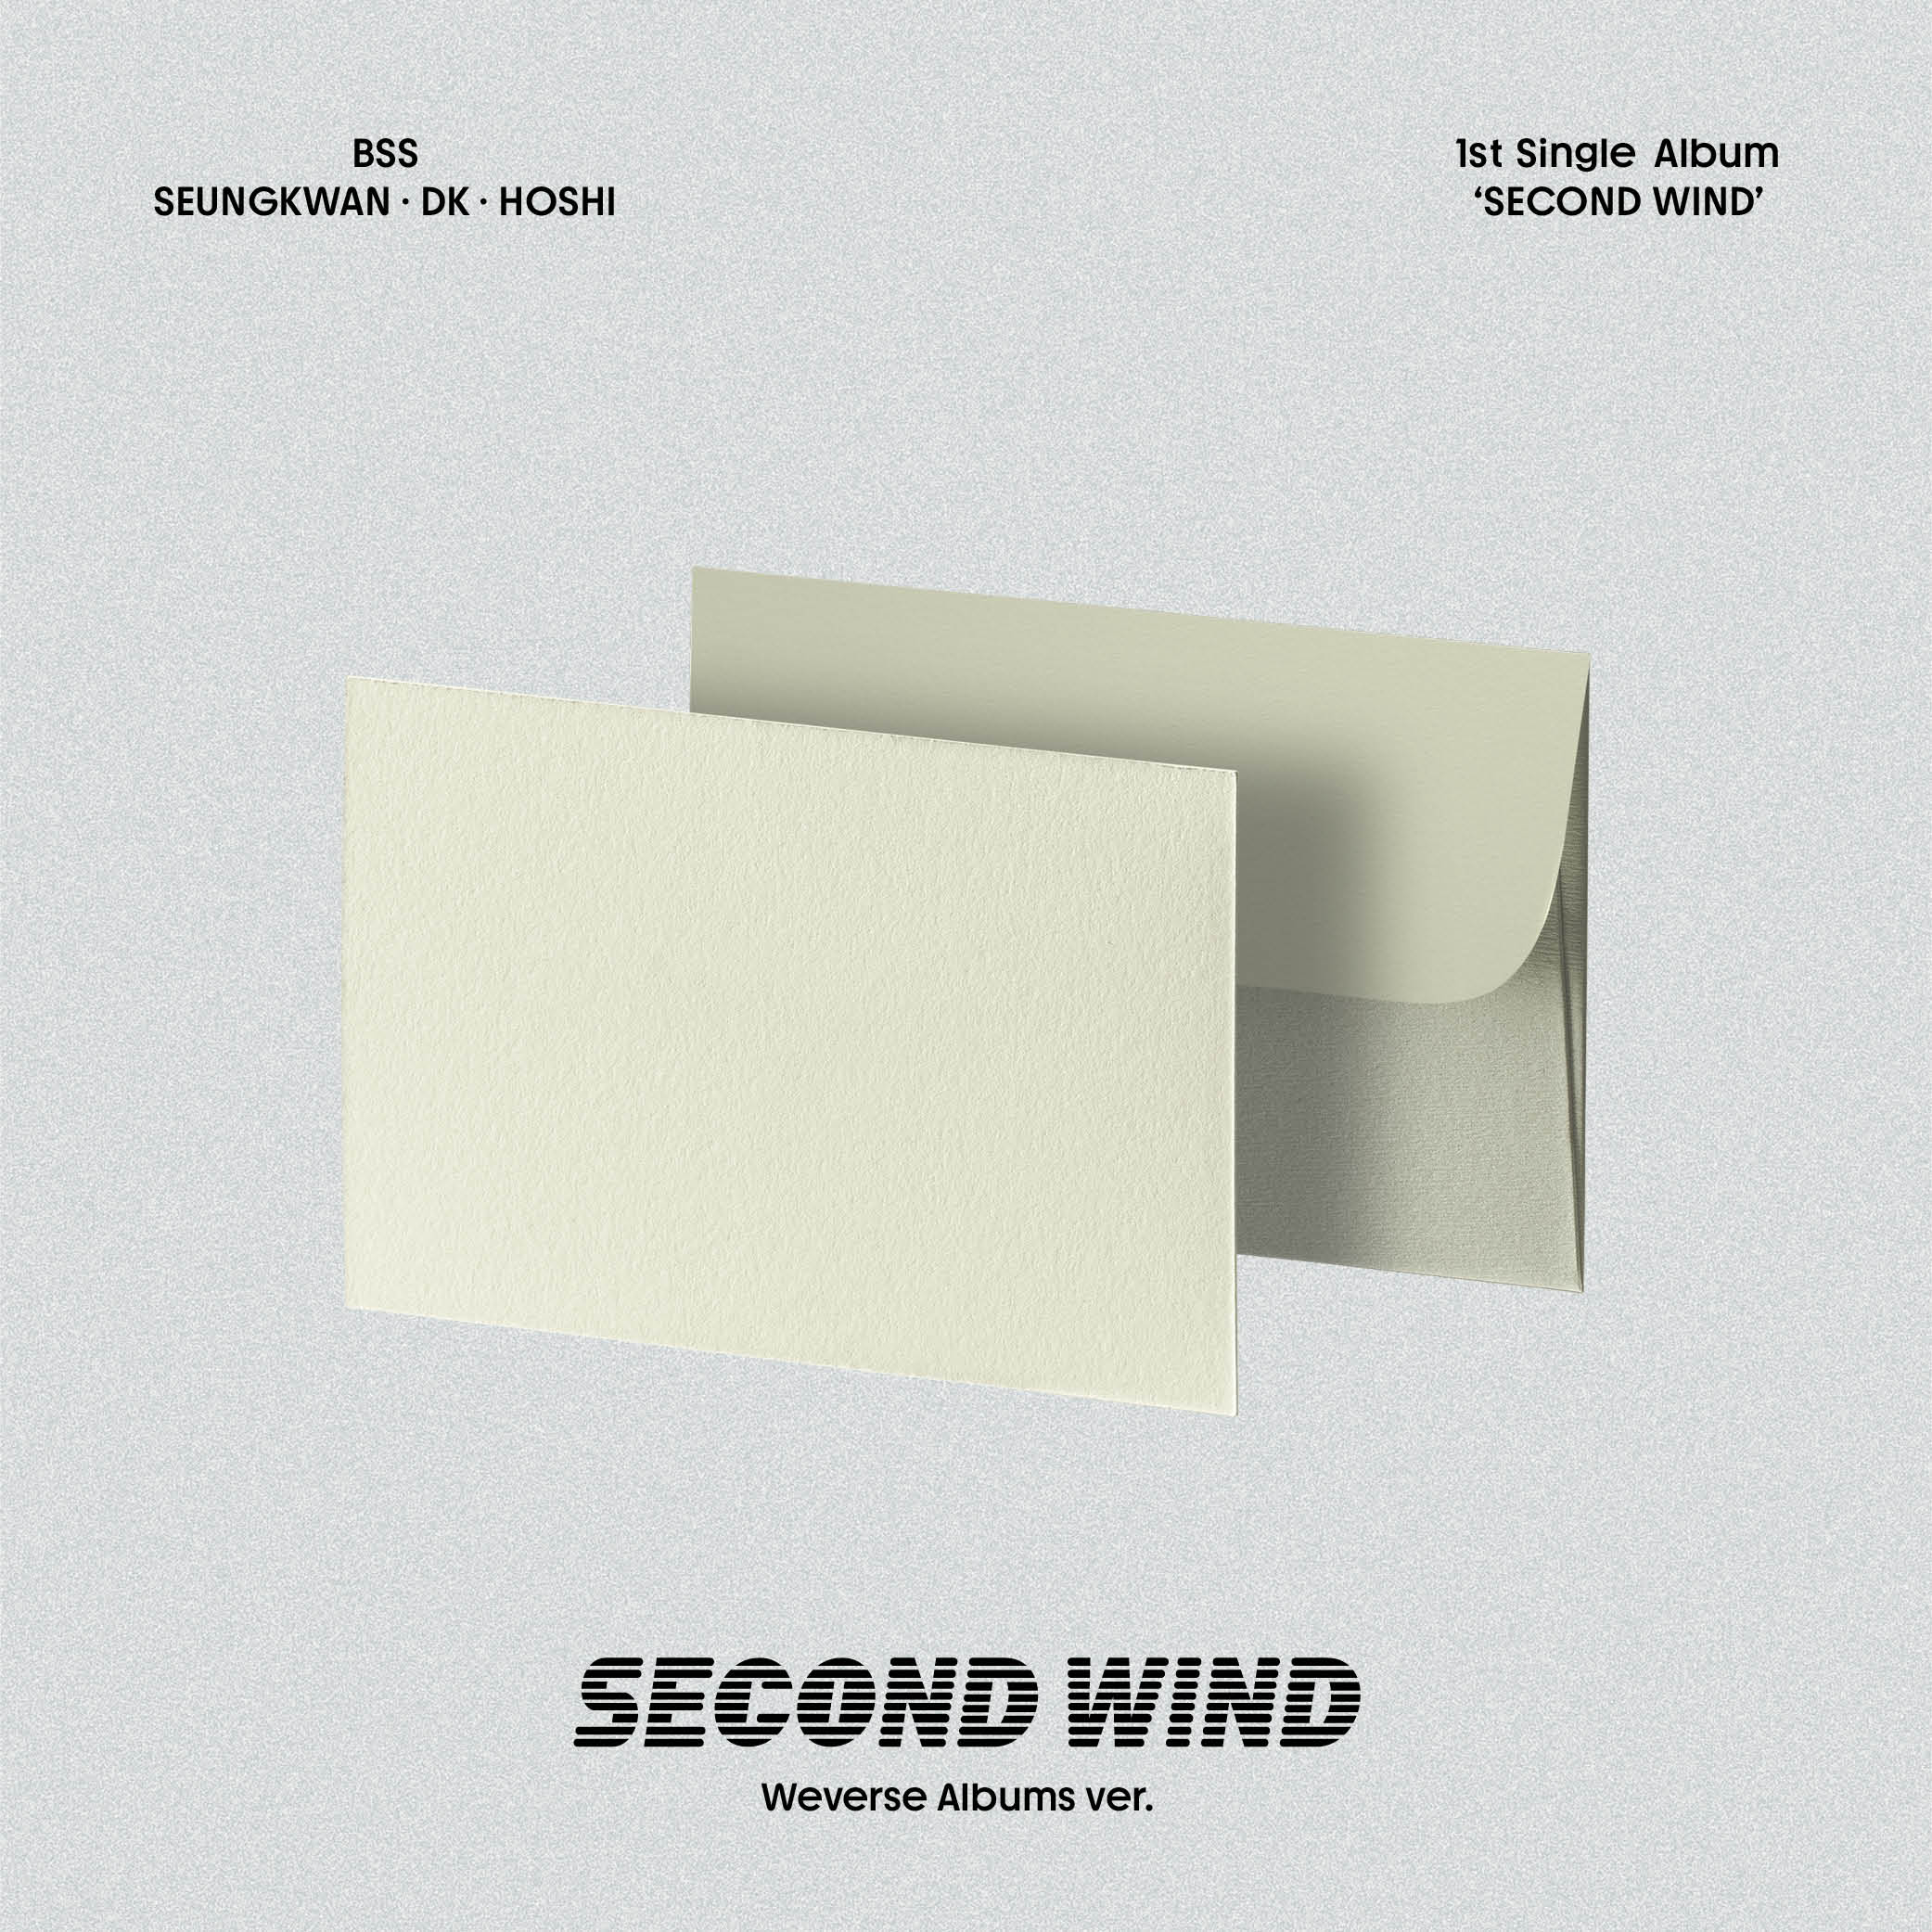 [拆卡专] (*备注 wd注册手机号) BSS (SEVENTEEN) - BSS 1st Single Album [SECOND WIND] (Weverse Albums ver.)_Sweet-夫胜宽魔法部